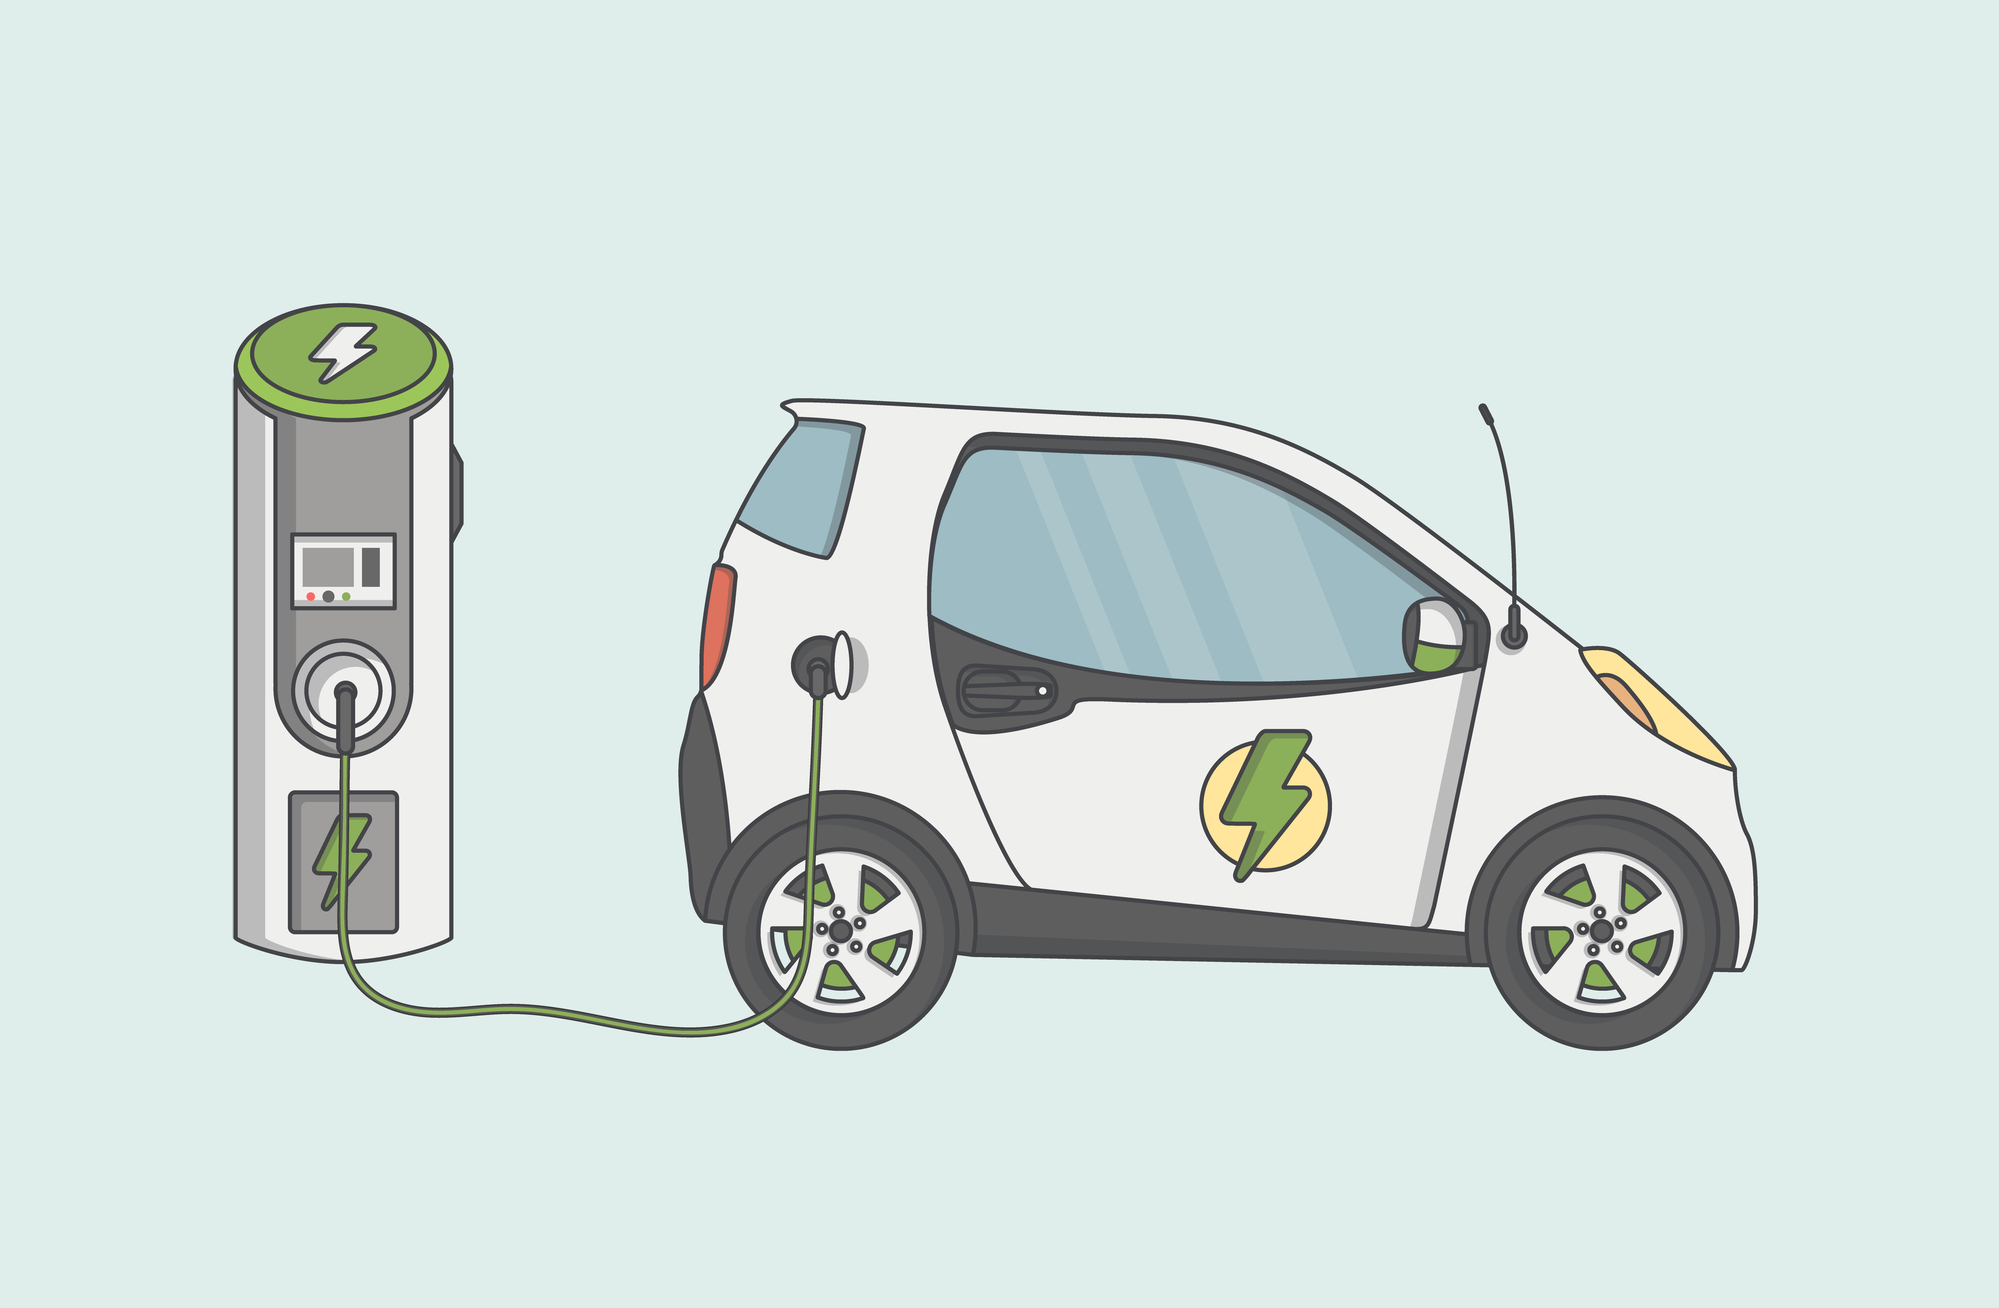 В Украине появятся две зарядные станции Supercharger от Tesla. Они заряжают автомобиль за 15 минут